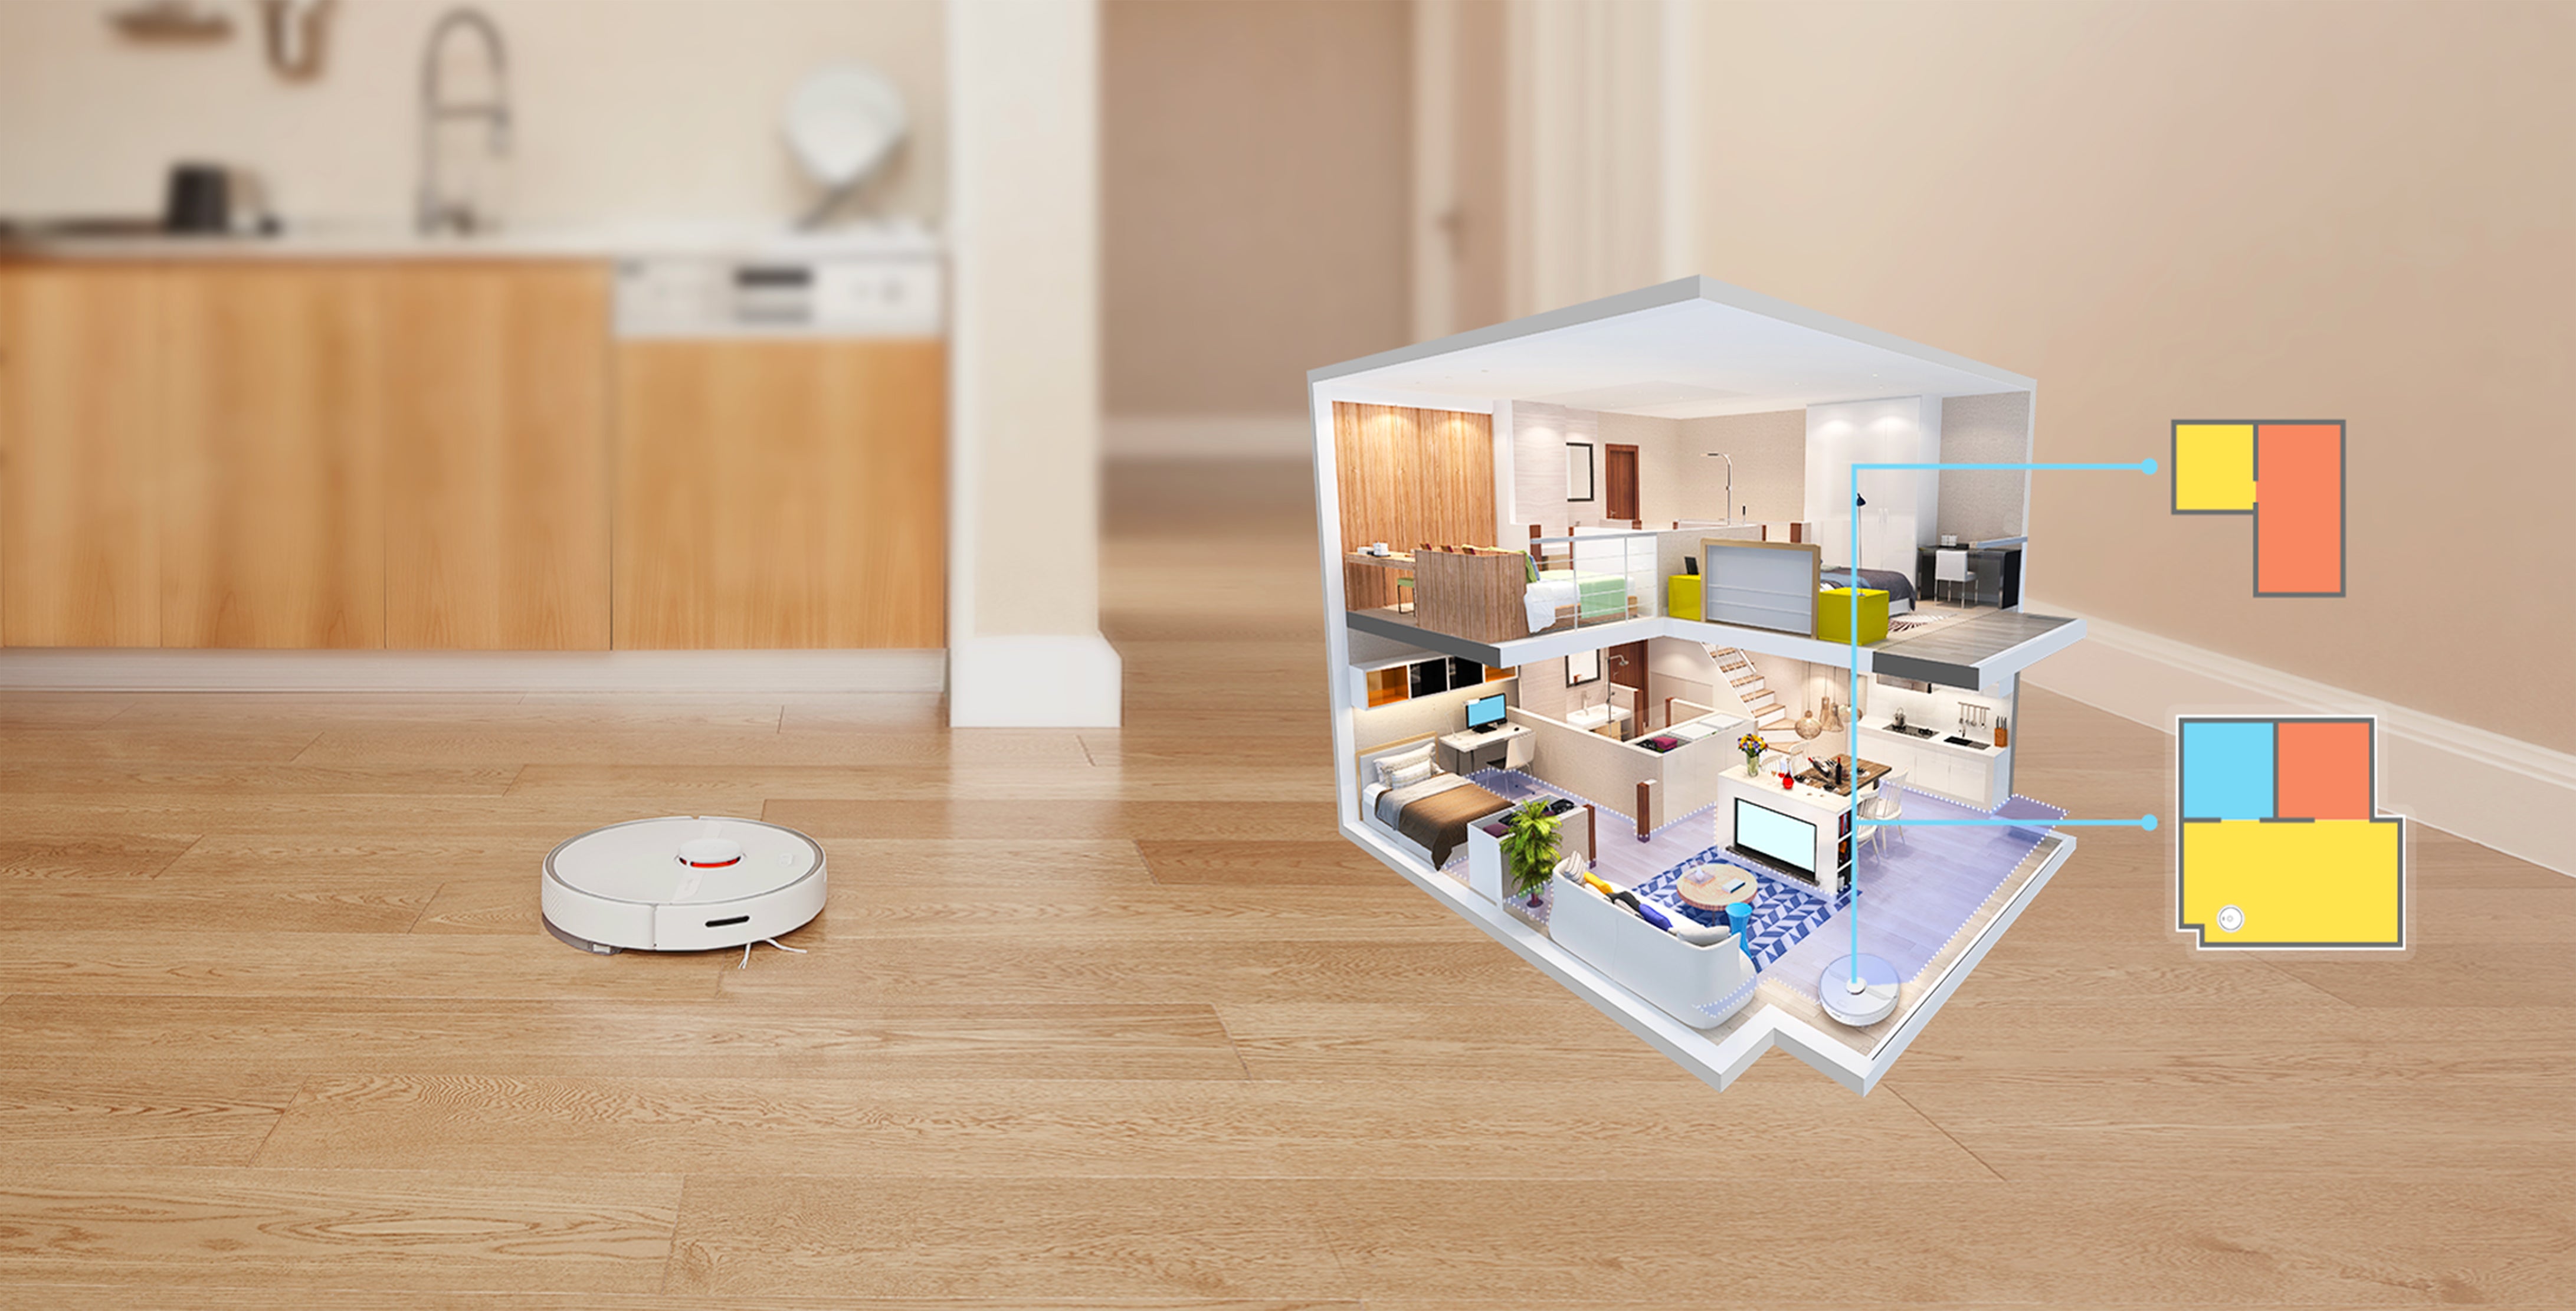 El sistema de mapeo de Roborock reconoce automáticamente los diferentes niveles de una casa